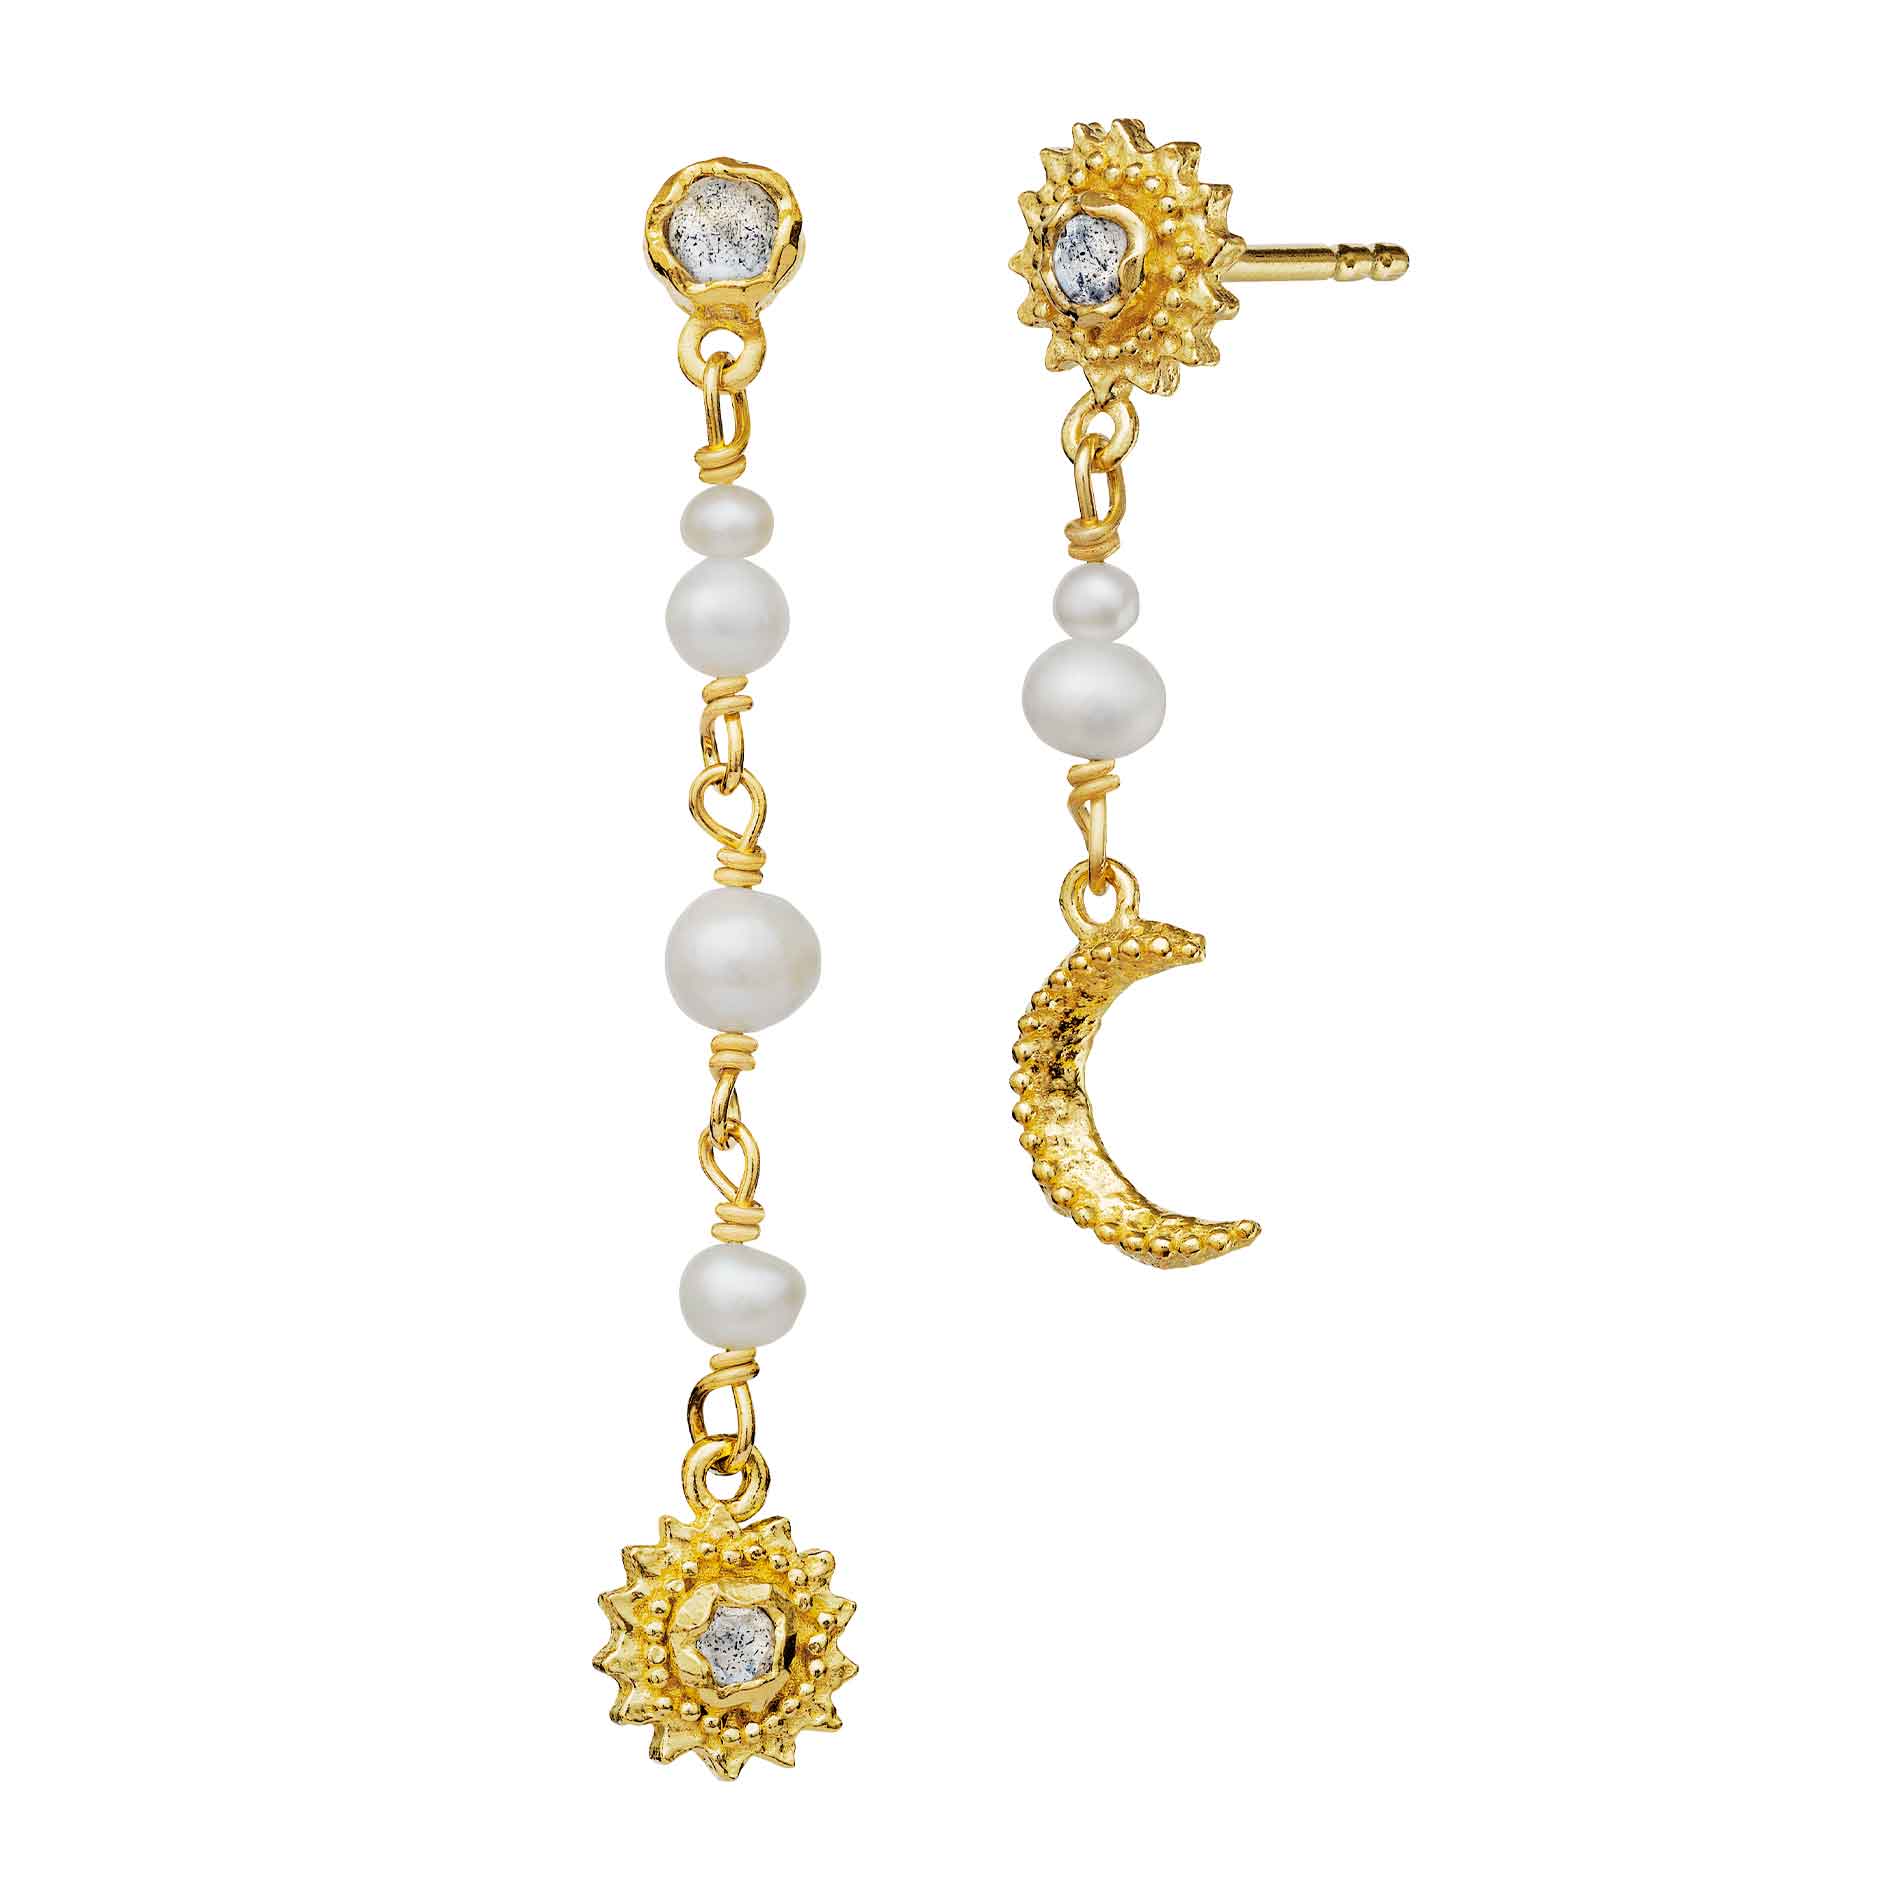 Forgyldte øreringe med hvide perler og labradorit med sol og måne motiv